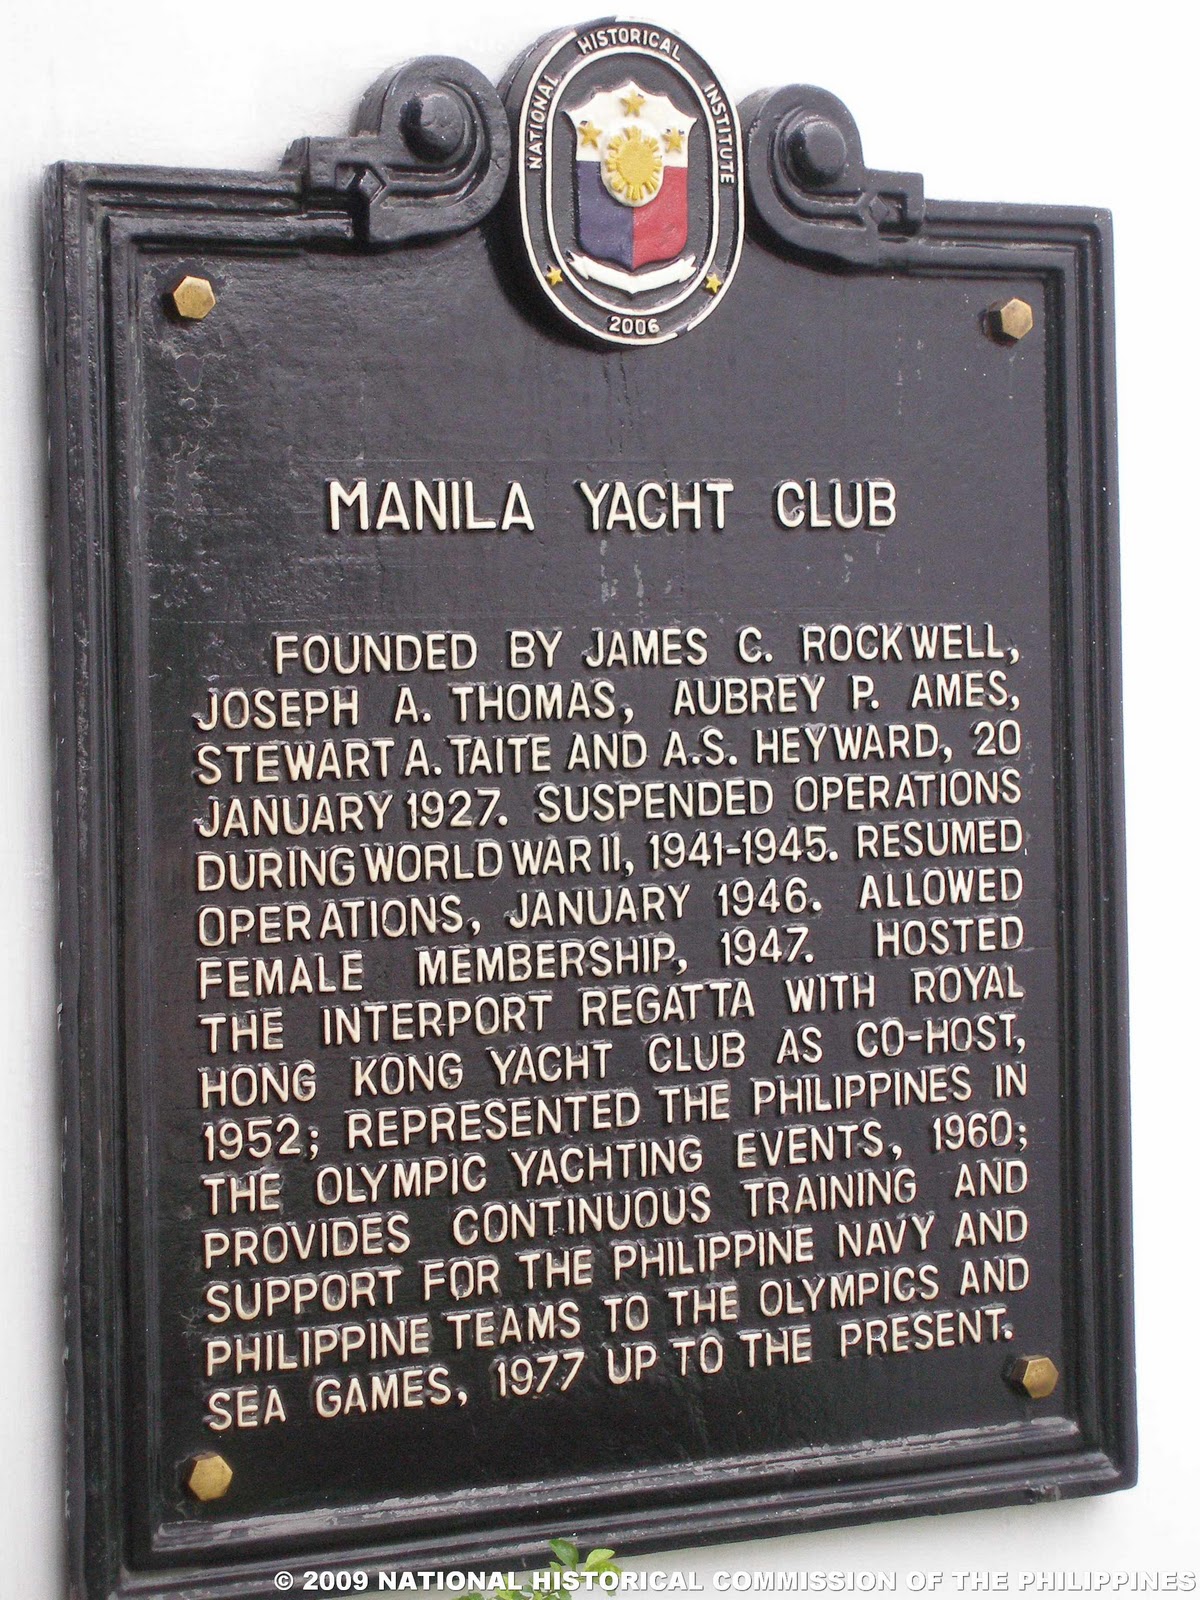 manila yacht club logo